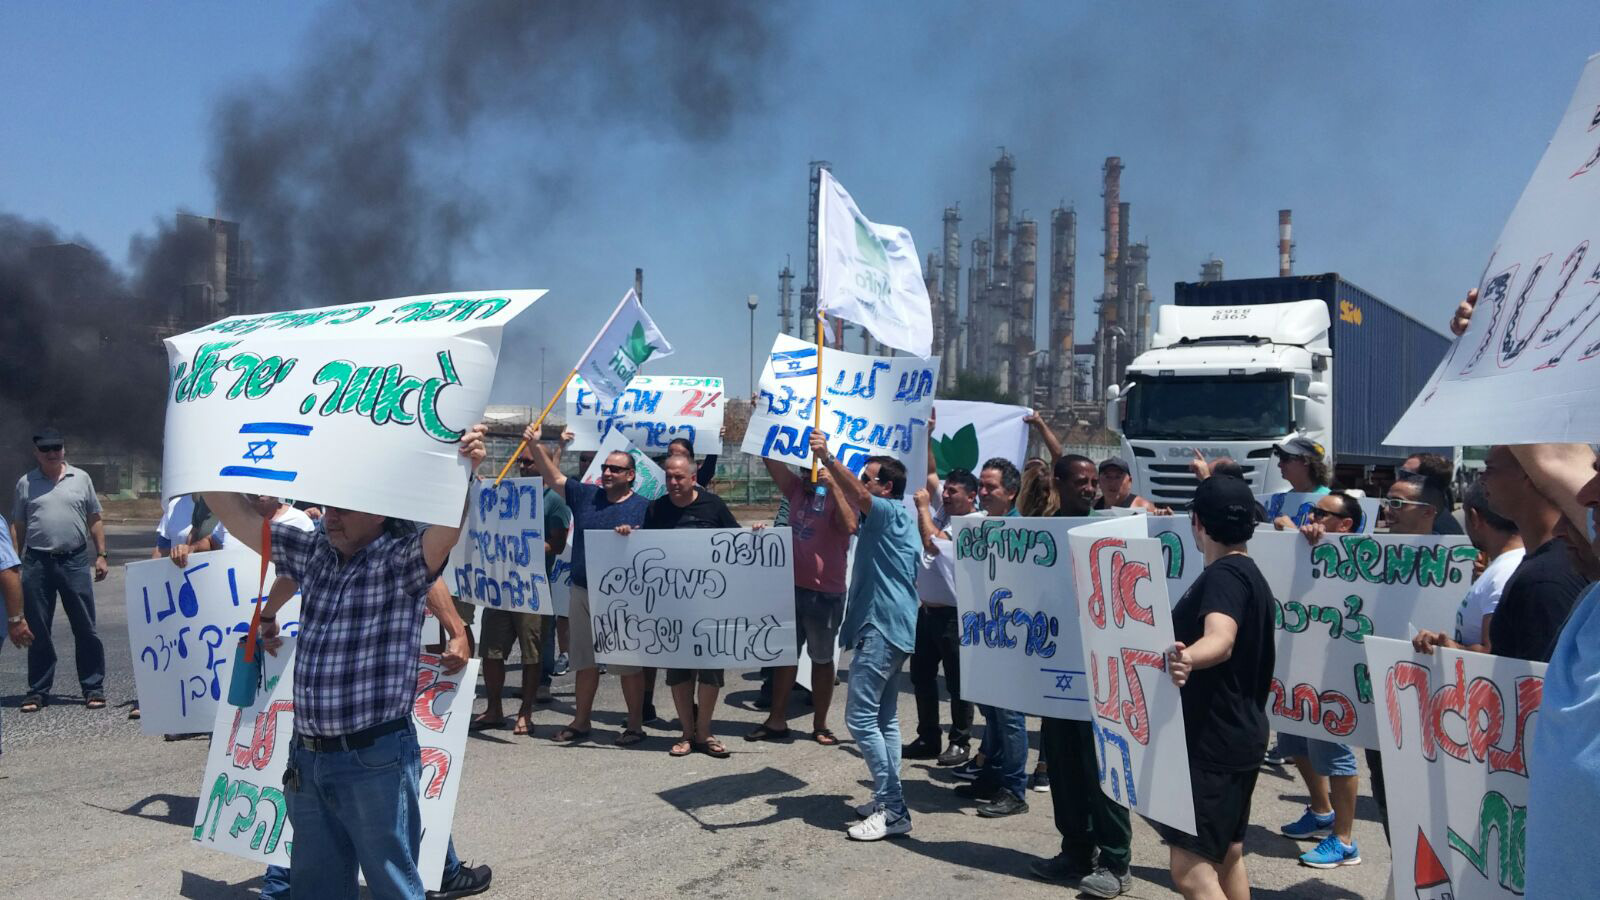 הפגנת עובדי חיפה כימיקלים צפון, אוגוסט 2017 (צילום: כח לעובדים)